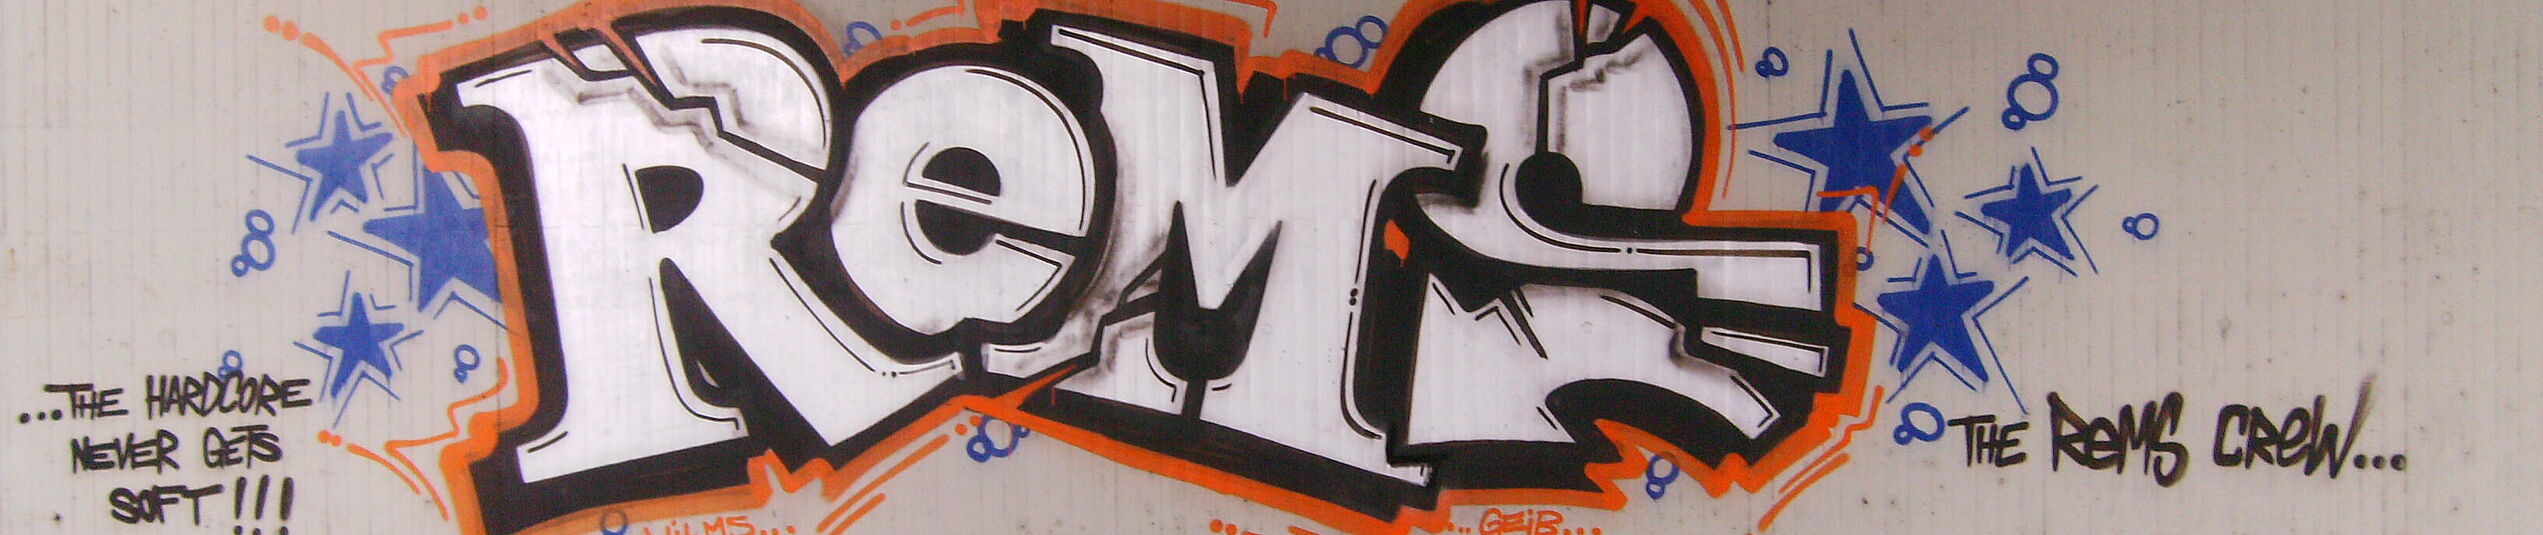 Graffiti ReMS